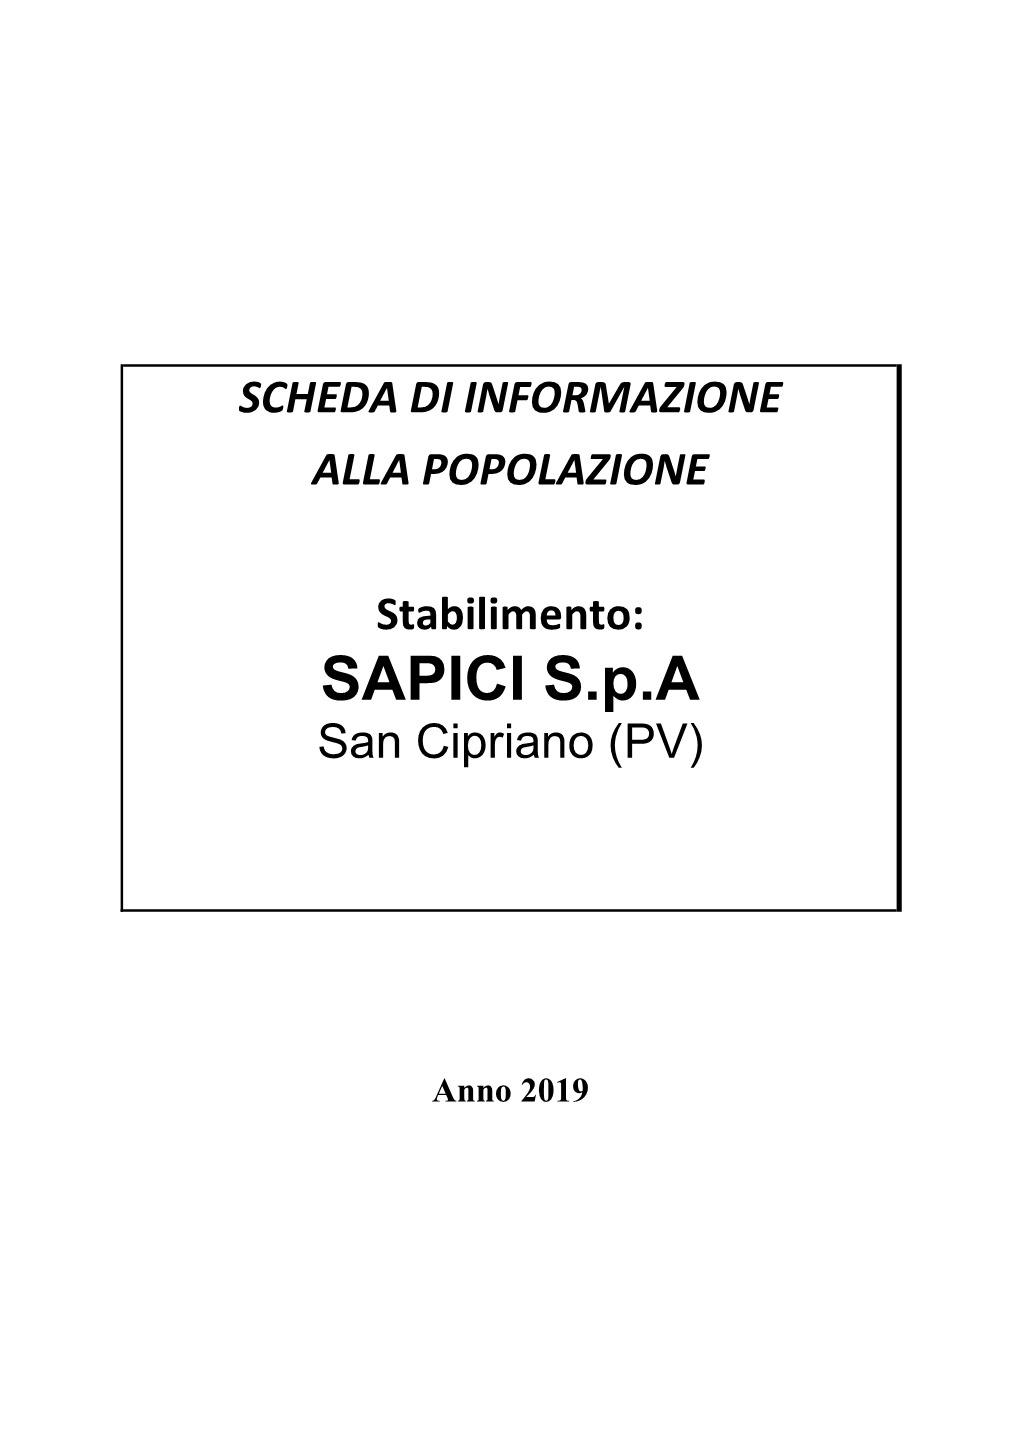 SAPICI S.P.A San Cipriano (PV)